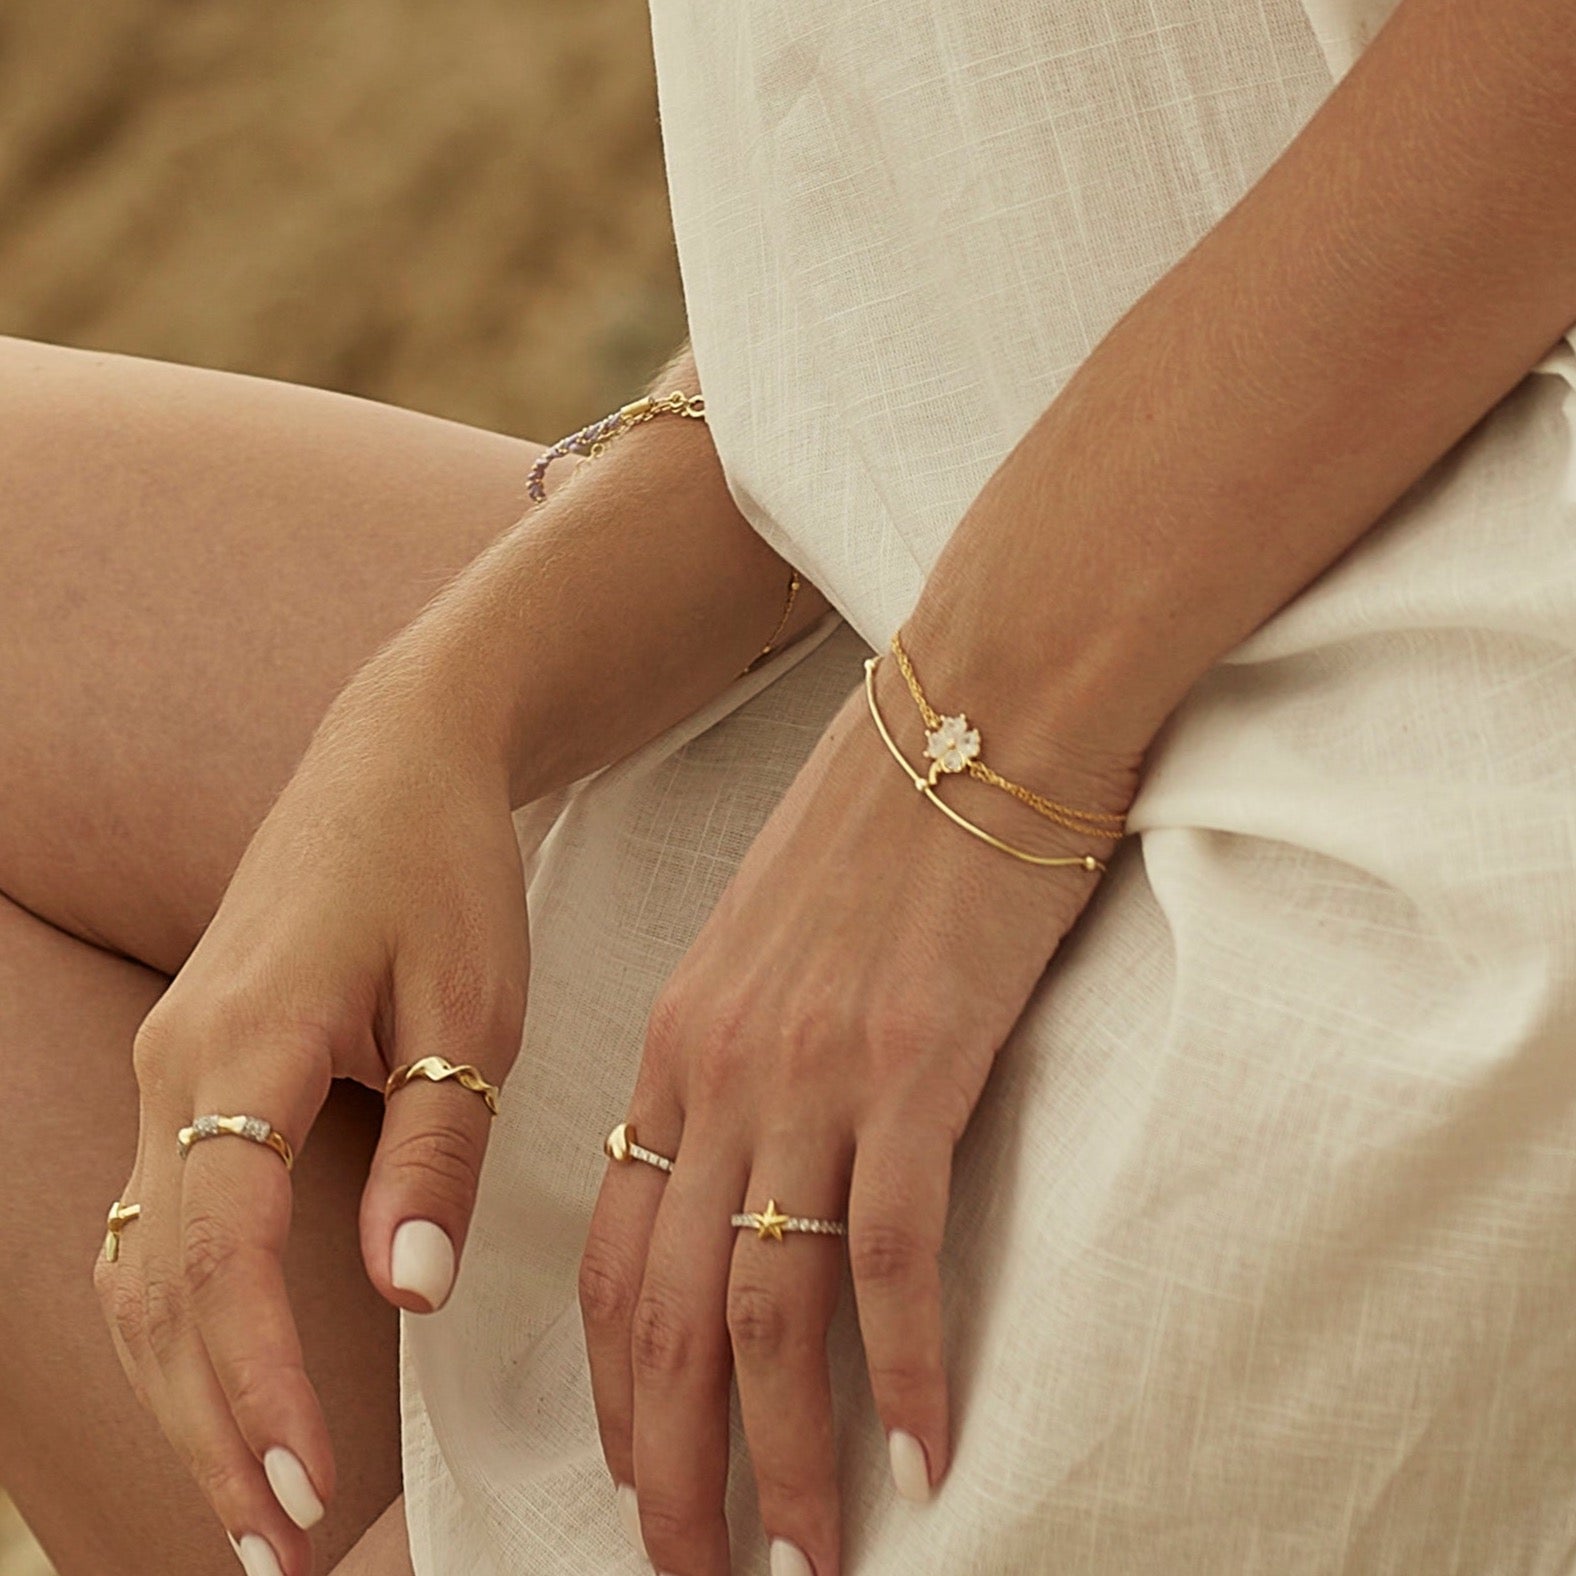 White Clover Bracelet and Italian Bead Chain Bracelet Layering Set